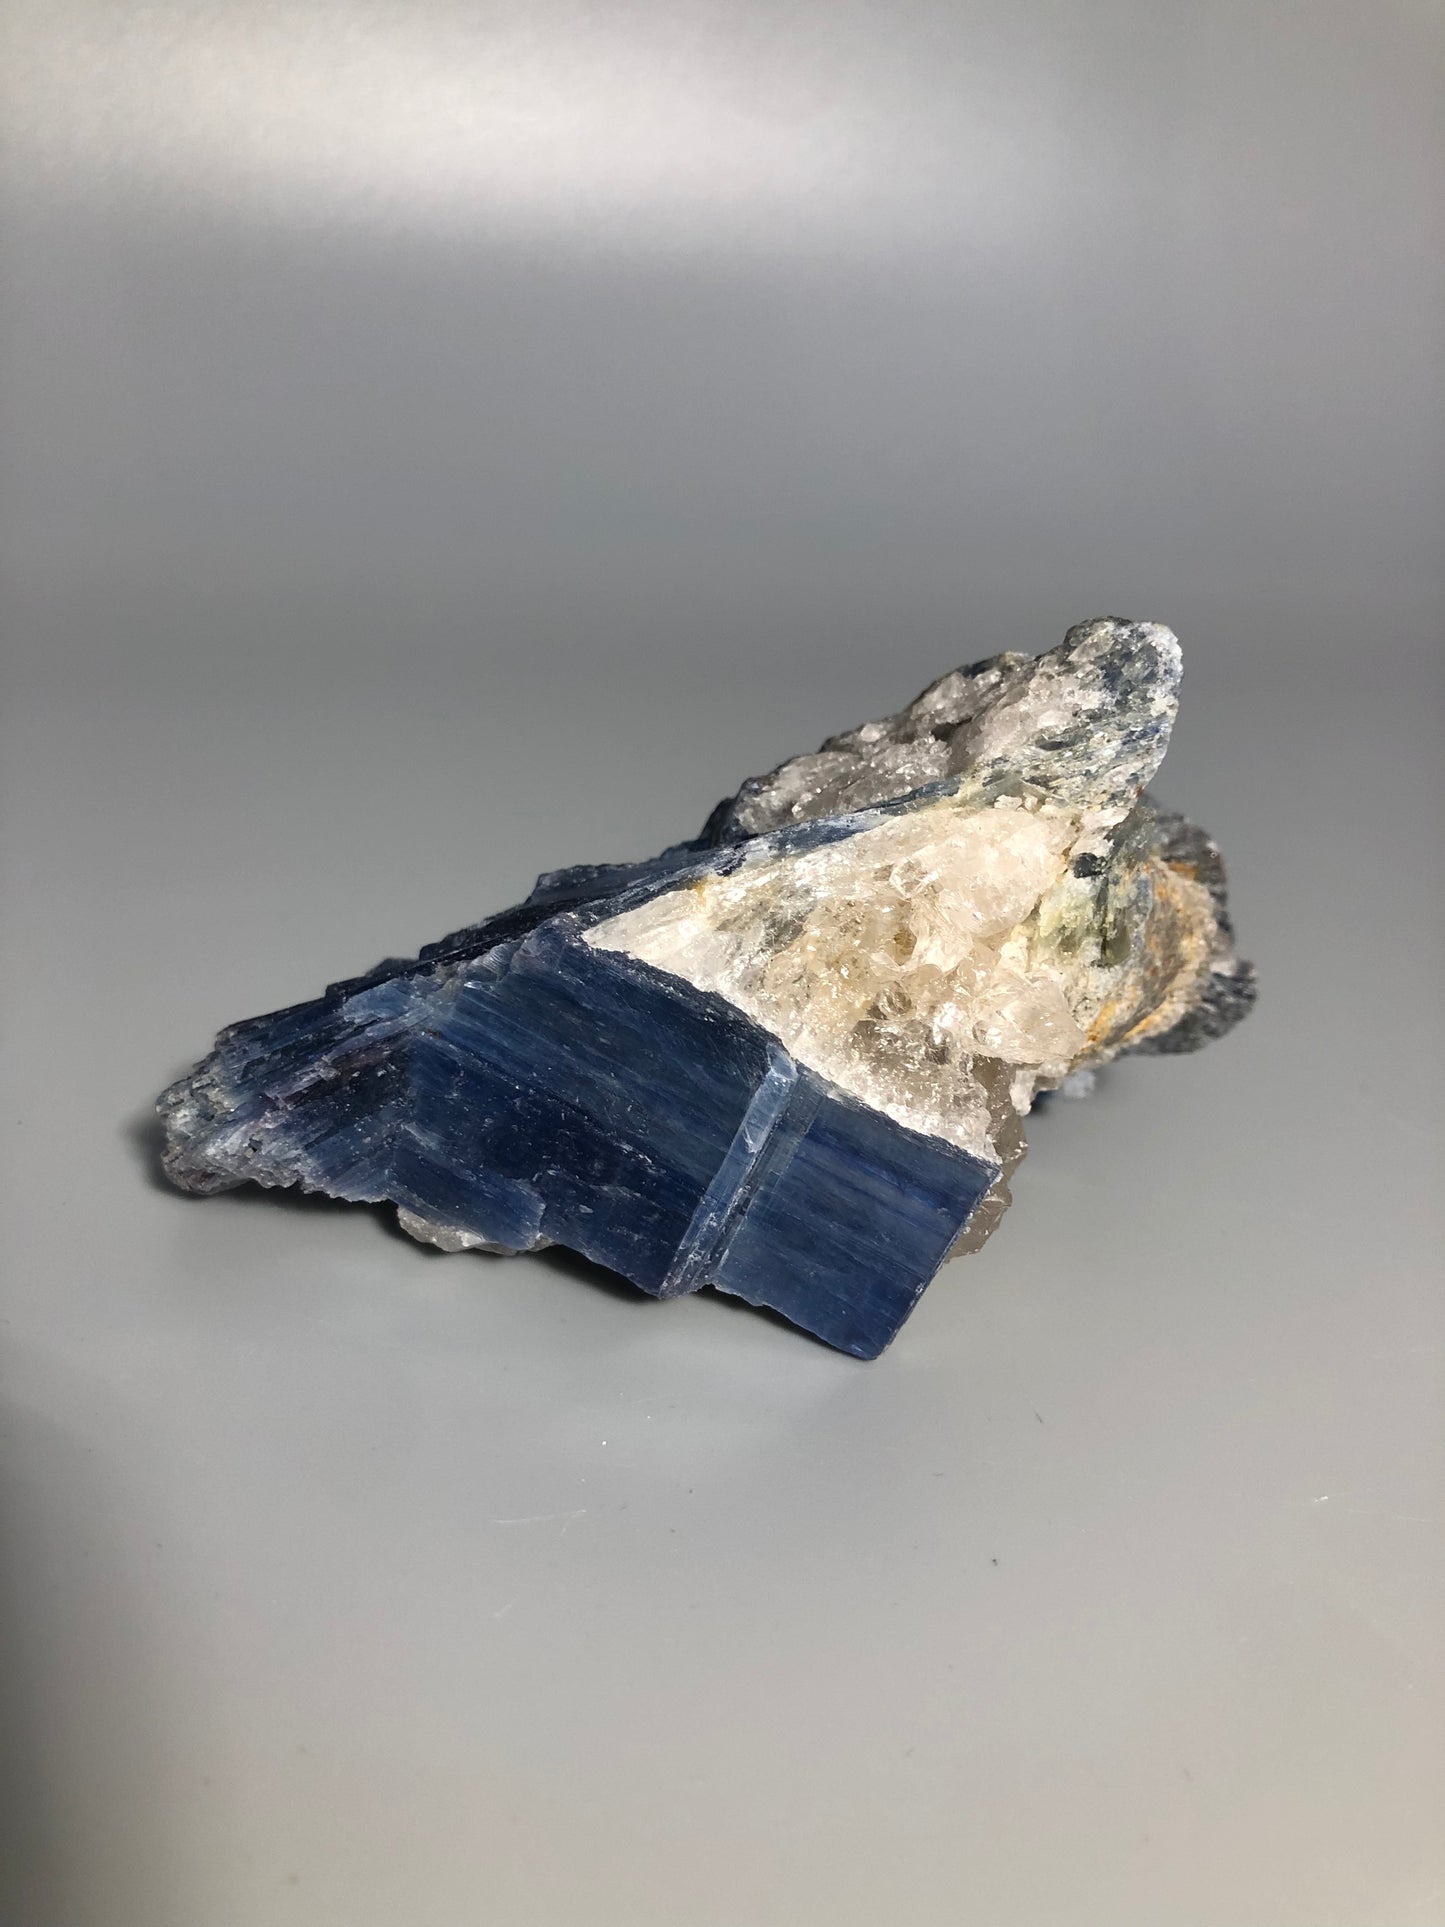 Blue Kyanite Crystal